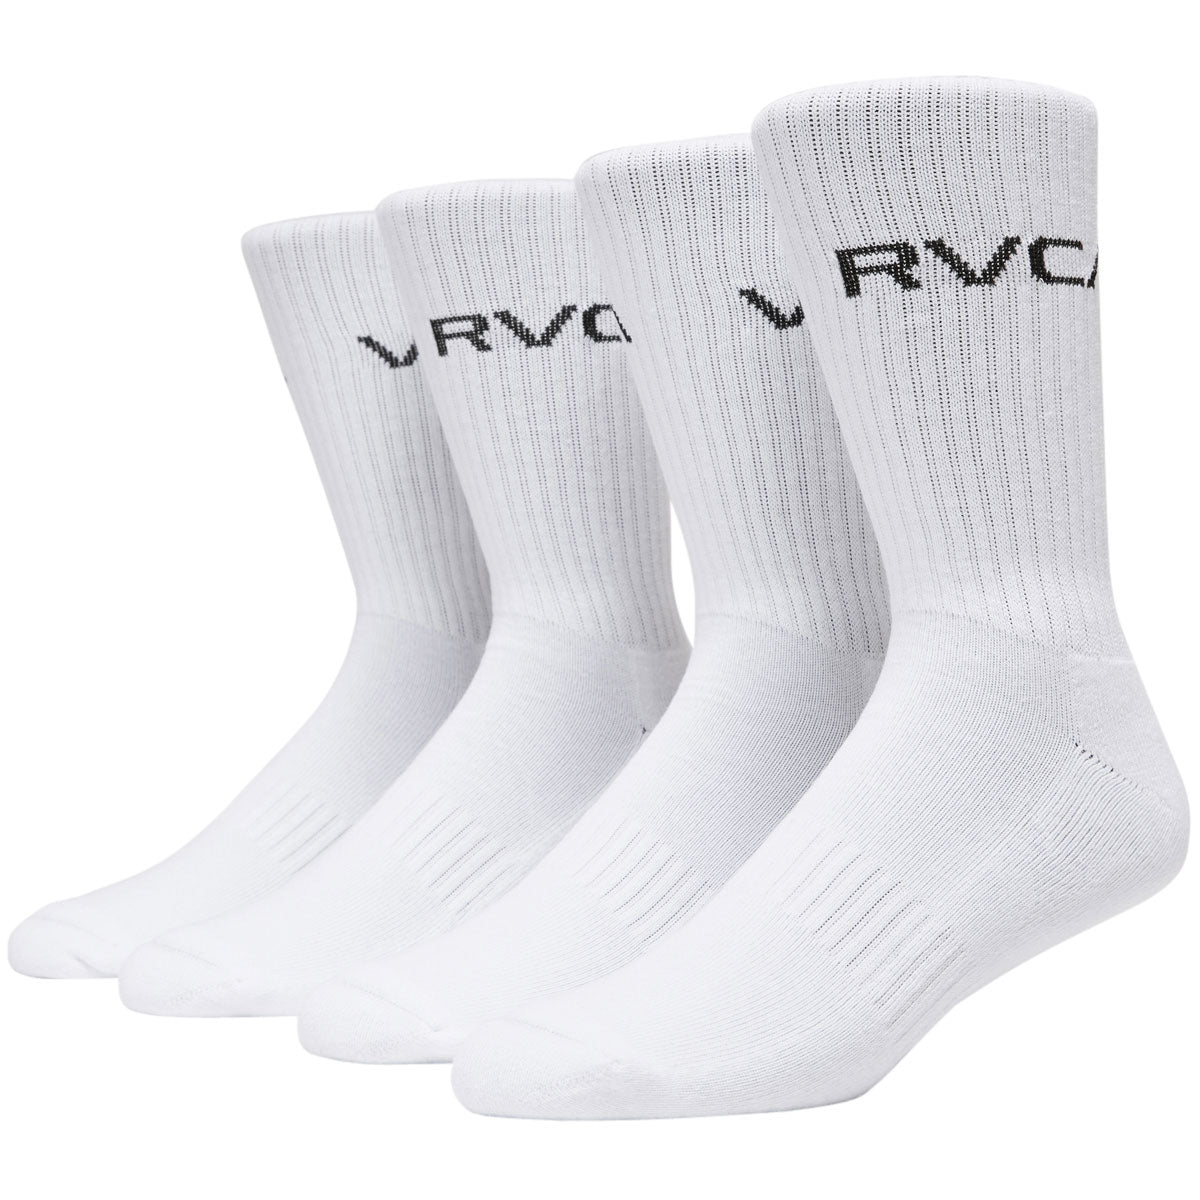 RVCA Basic Logo Crew 2 Pack of Socks - White image 1